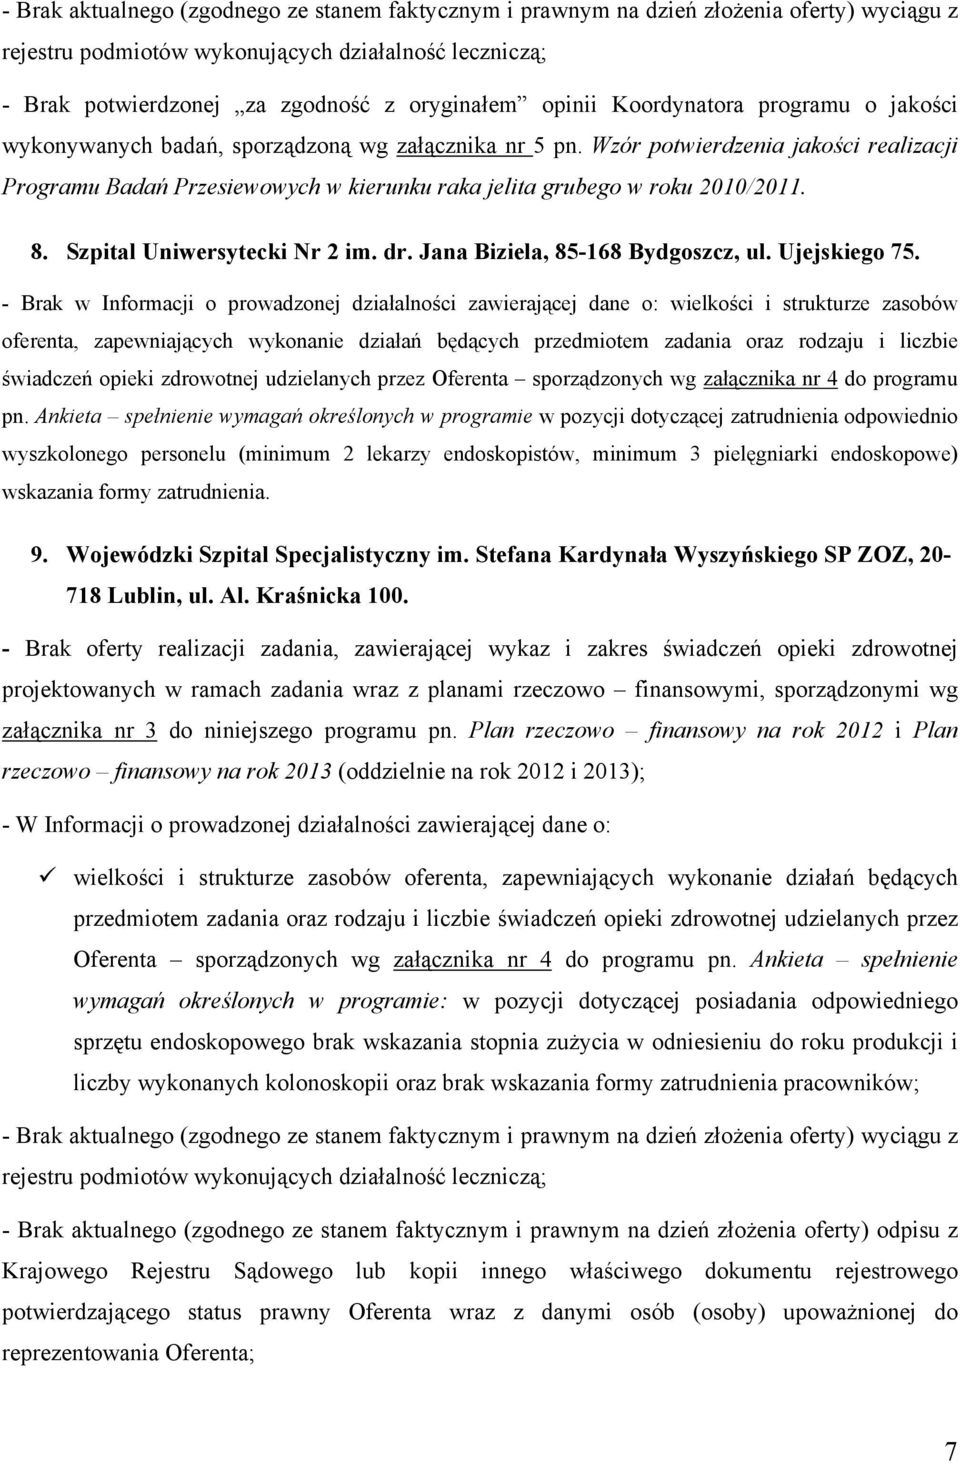 Wzór potwierdzenia jakości realizacji Programu Badań Przesiewowych w kierunku raka jelita grubego w roku 2010/2011. 8. Szpital Uniwersytecki Nr 2 im. dr. Jana Biziela, 85-168 Bydgoszcz, ul.